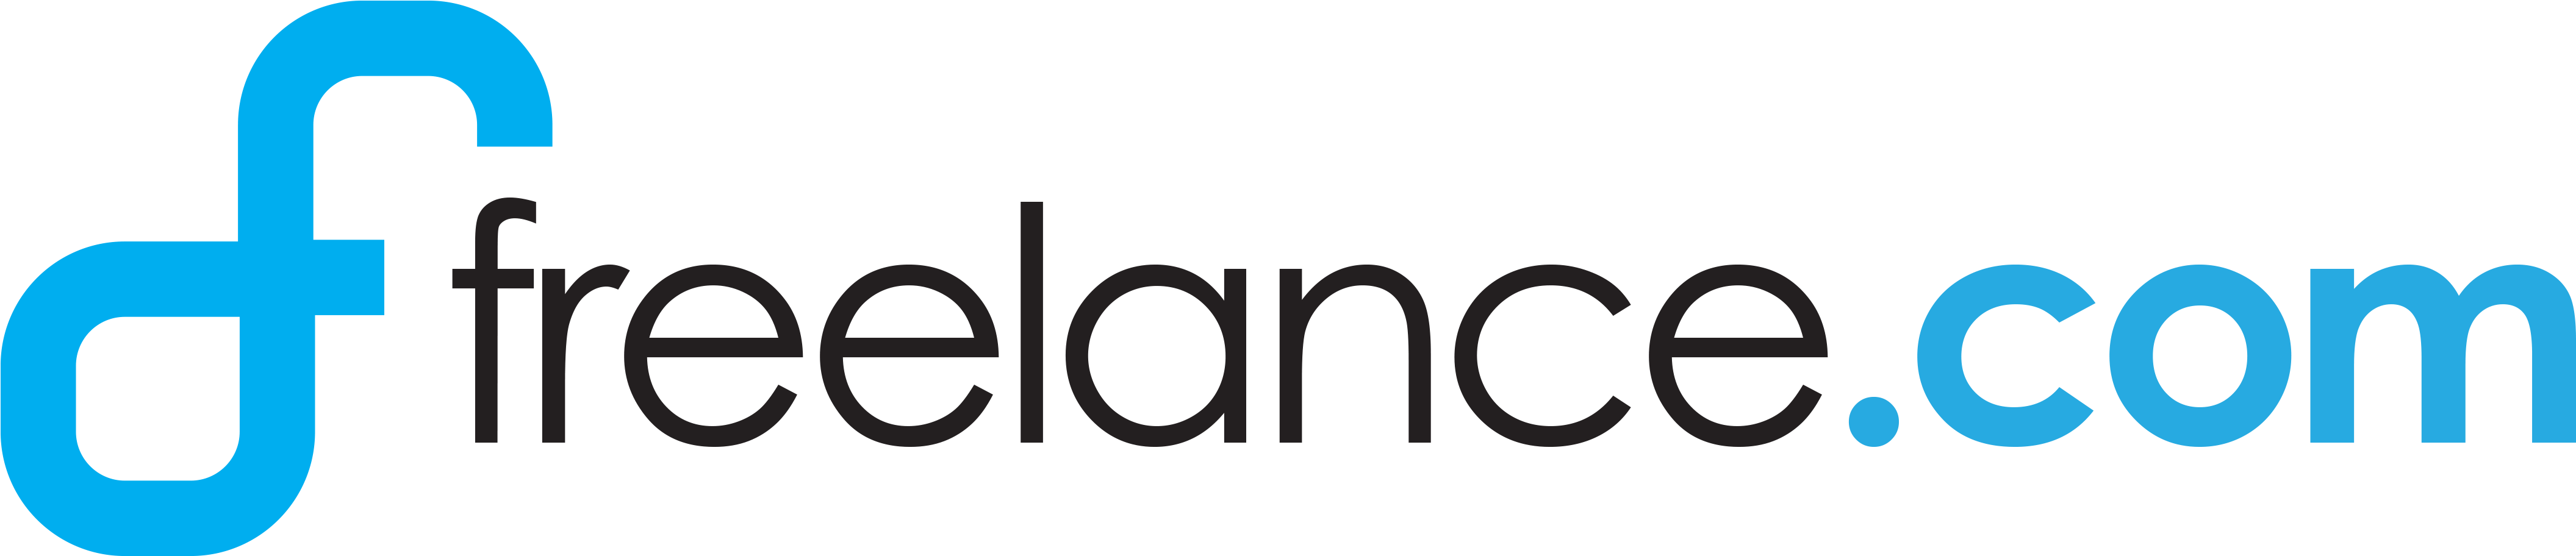 Download Freelance - Com Review - Freelance Com Logo Clipart Png